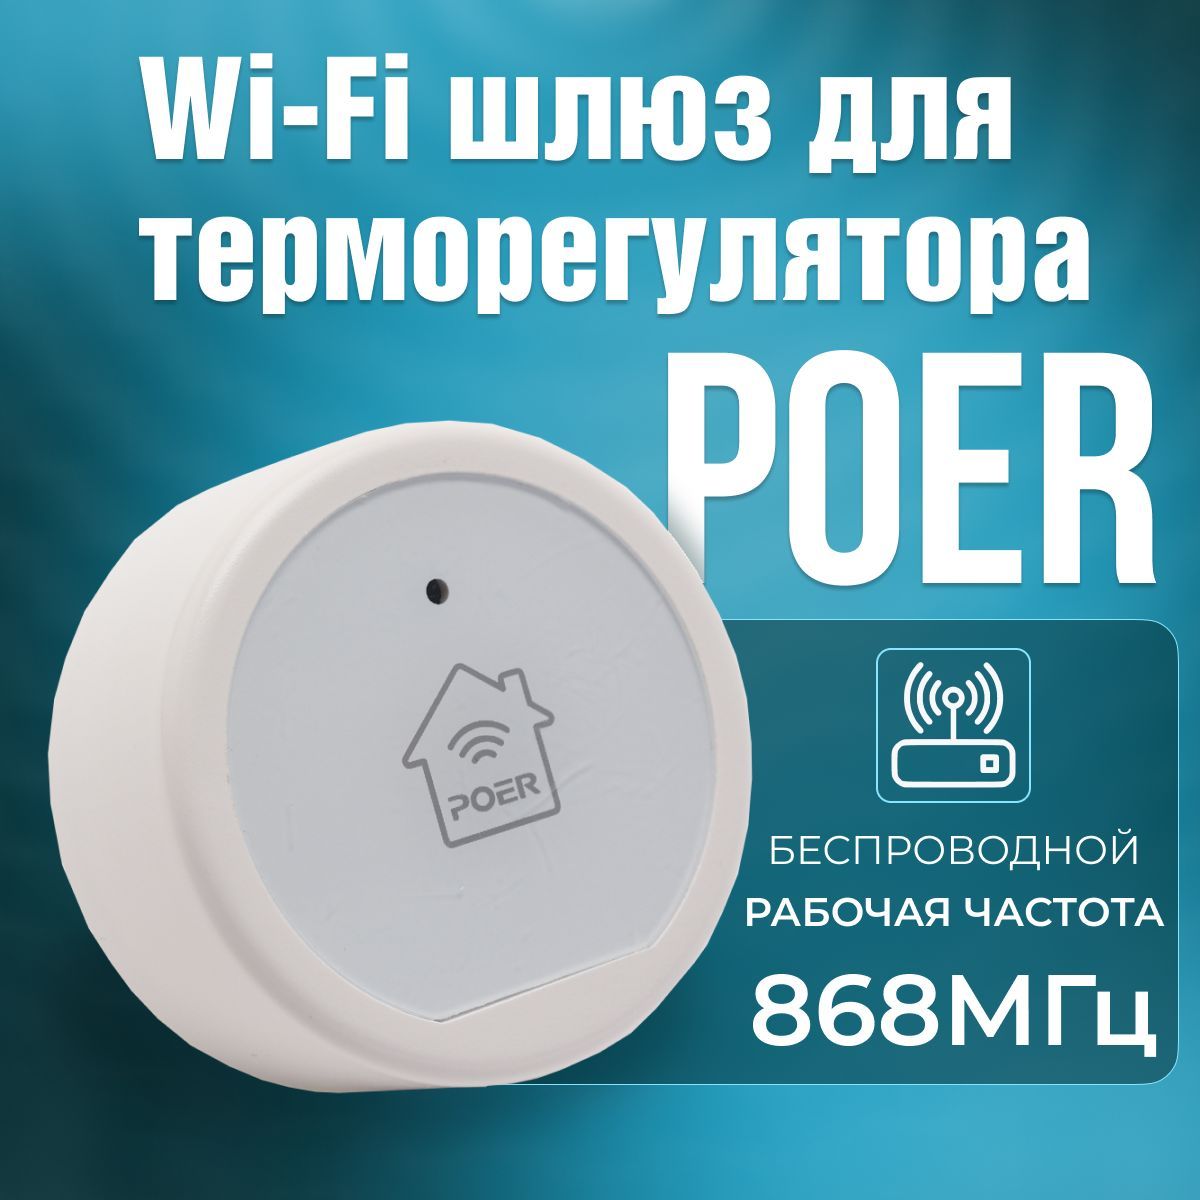 Wi-FiшлюзPOERPTG10удалённогоуправленияотоплением,термостатамиPOER868МГц